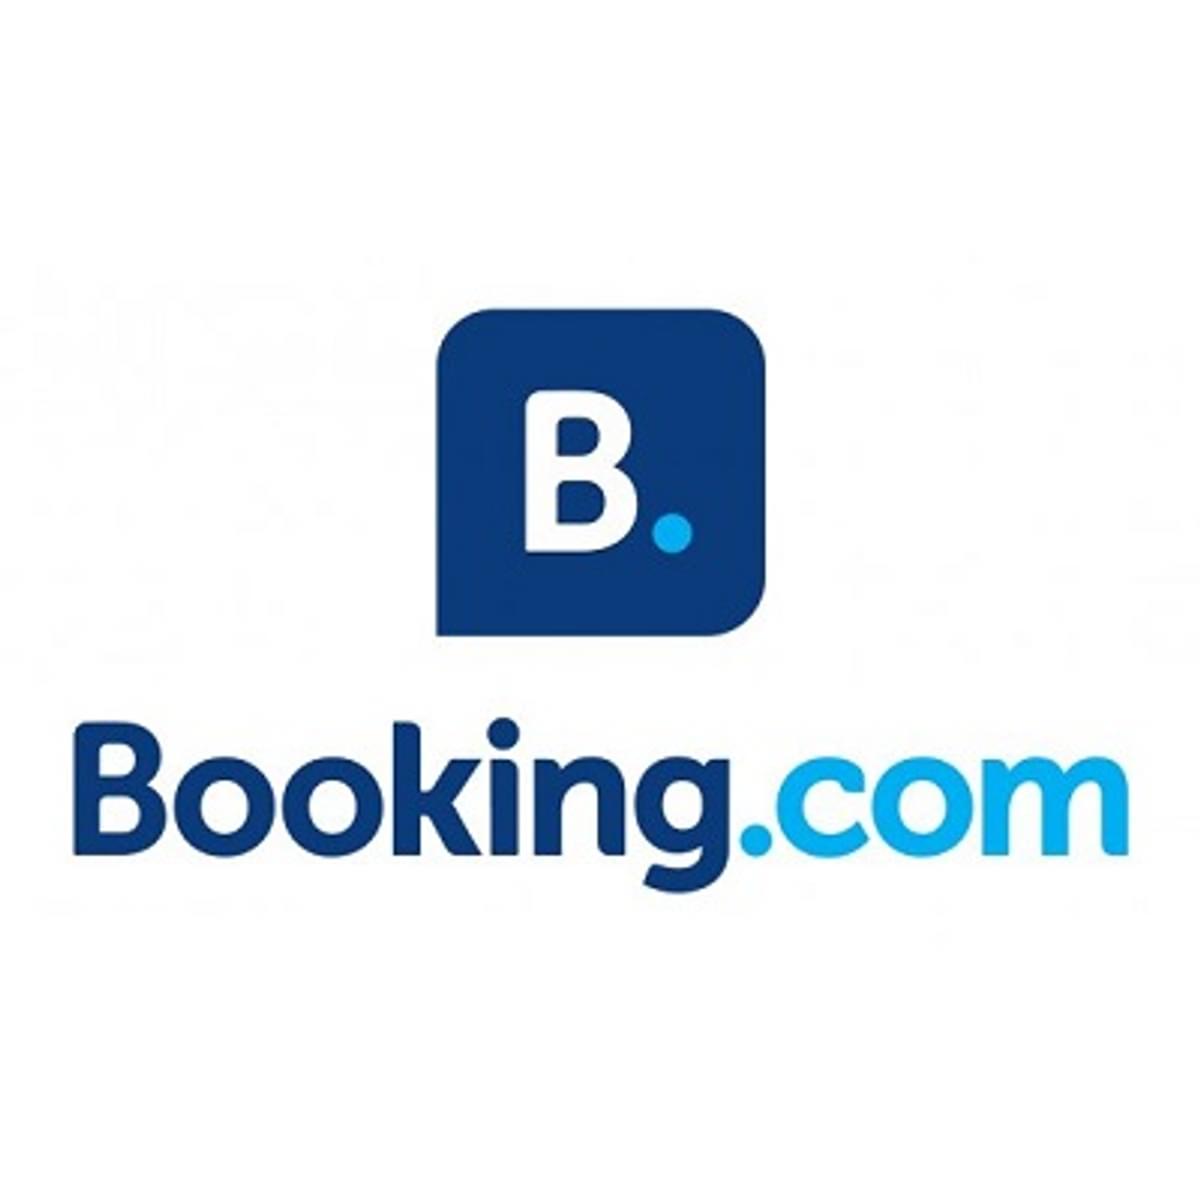 Booking.com schort activiteiten in Rusland op image